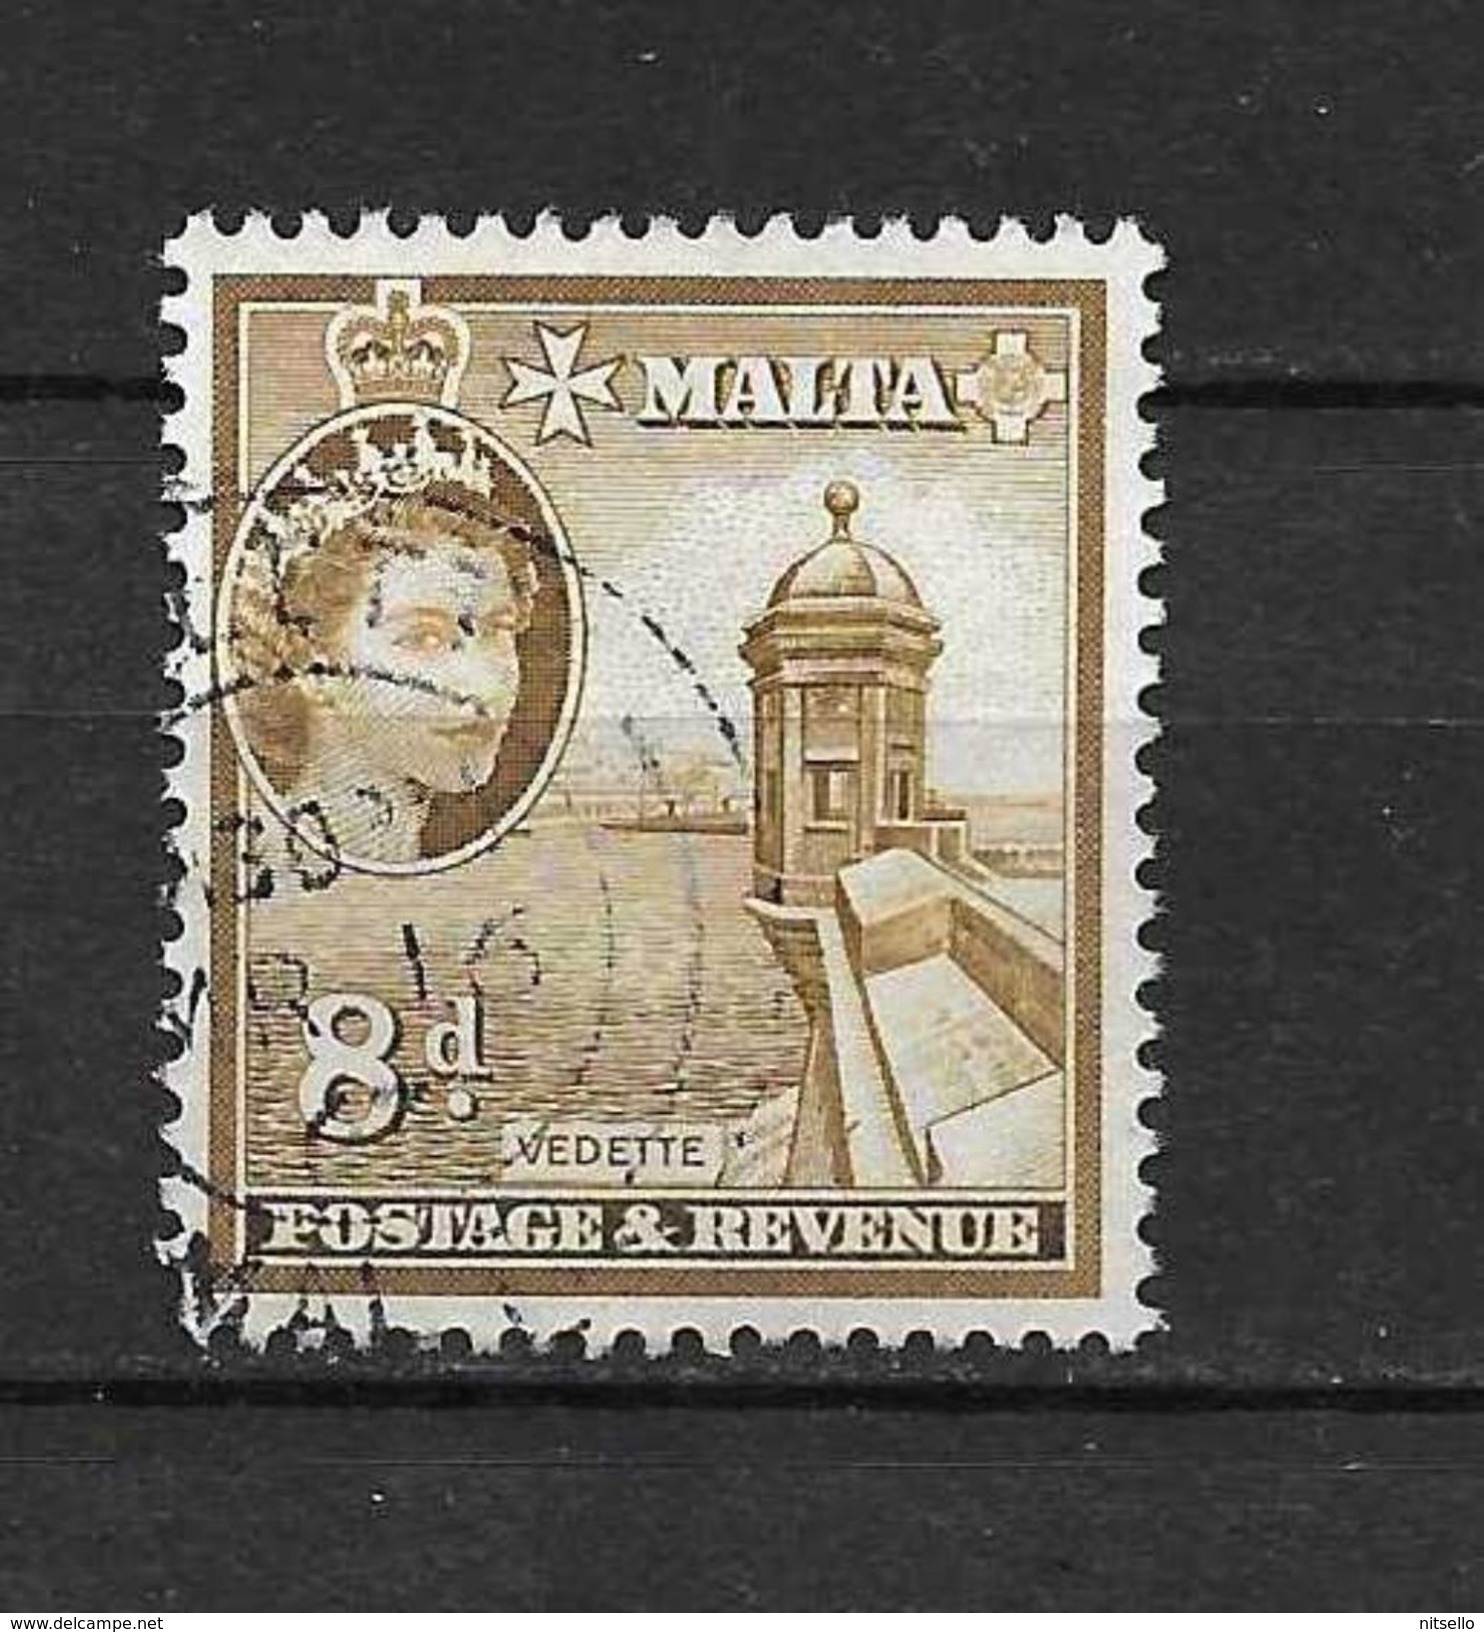 LOTE 1984    ///   (C006) MALTA 1954     YVERT Nº: 248   ¡¡¡¡¡ LIQUIDATION !!!!!!! - Malta (...-1964)